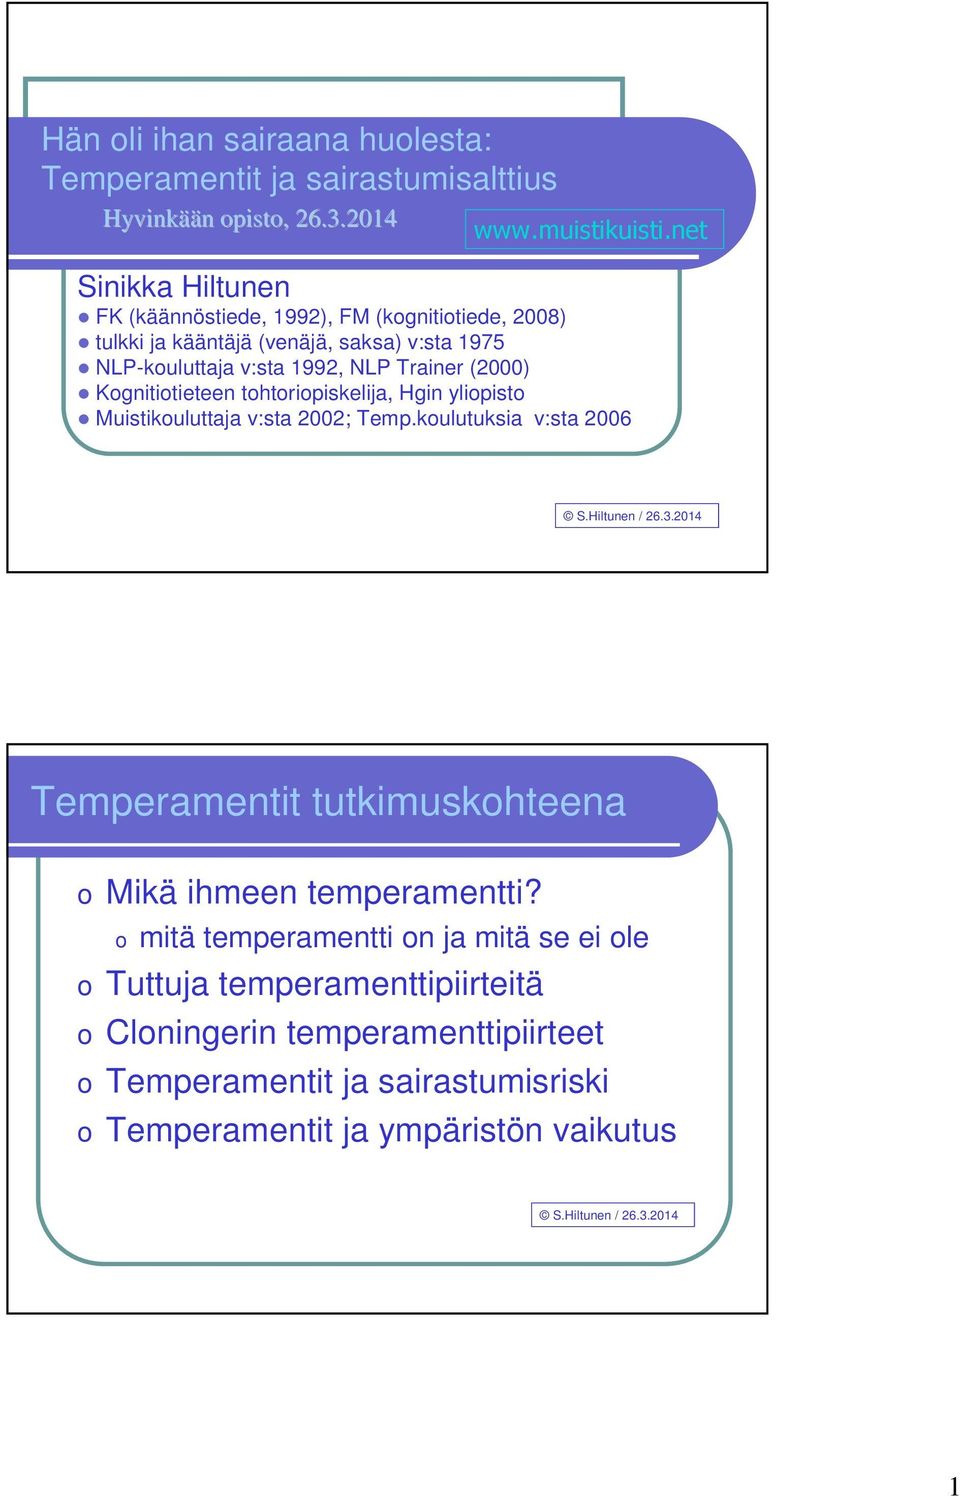 Kognitiotieteen tohtoriopiskelija, Hgin yliopisto Muistikouluttaja v:sta 2002; Temp.koulutuksia v:sta 2006 S.Hiltunen / 26.3.